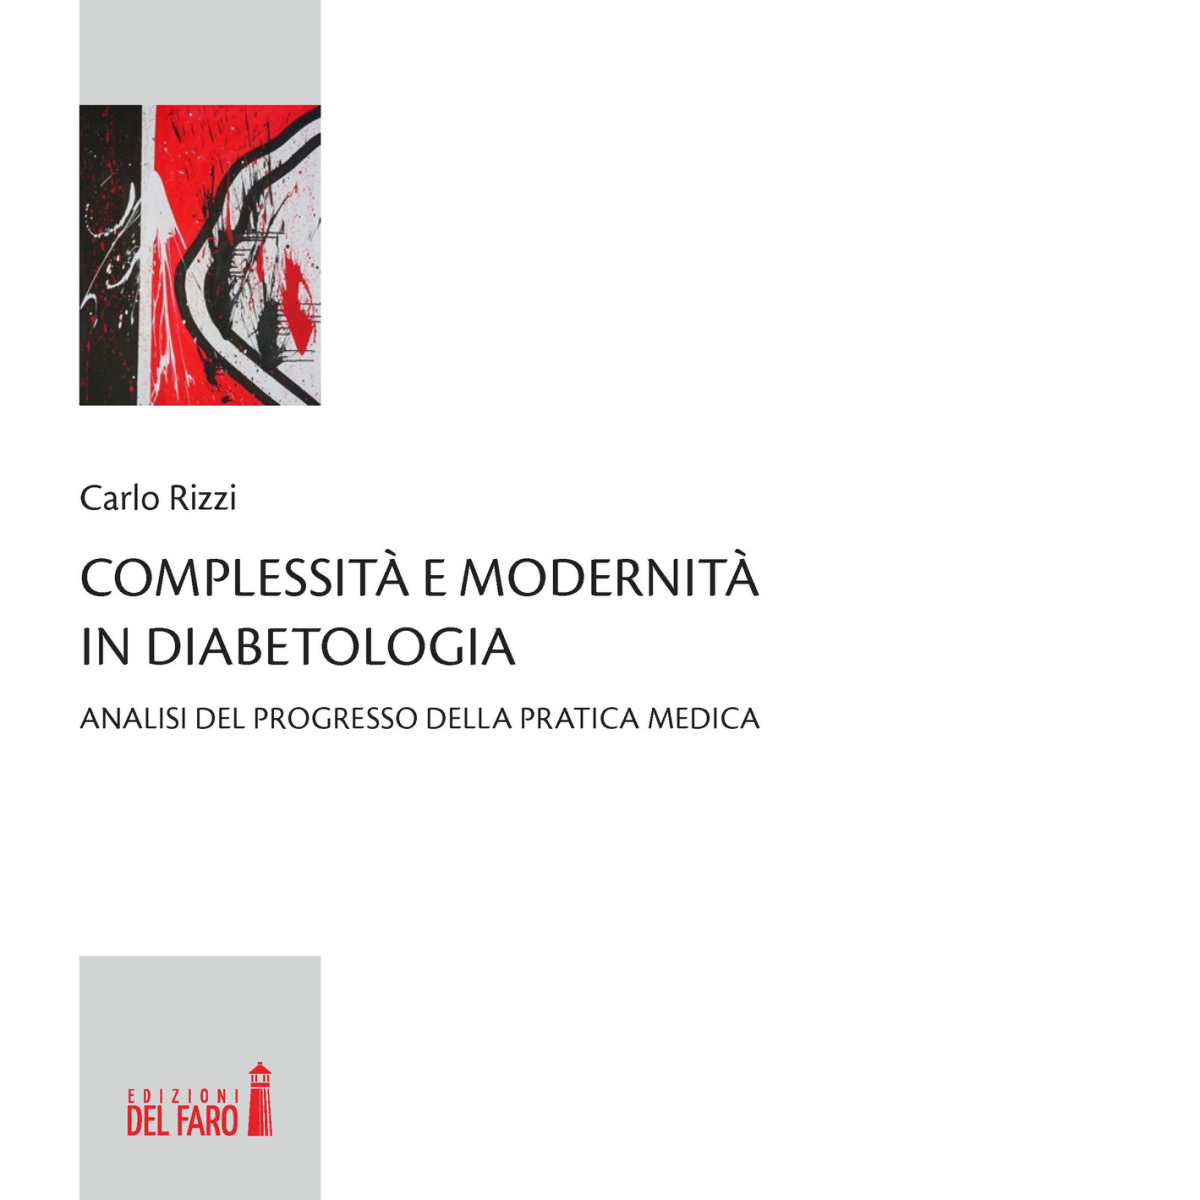 Complessit? e modernit? in diabetologia di Rizzi Carlo - Del Faro, 2016